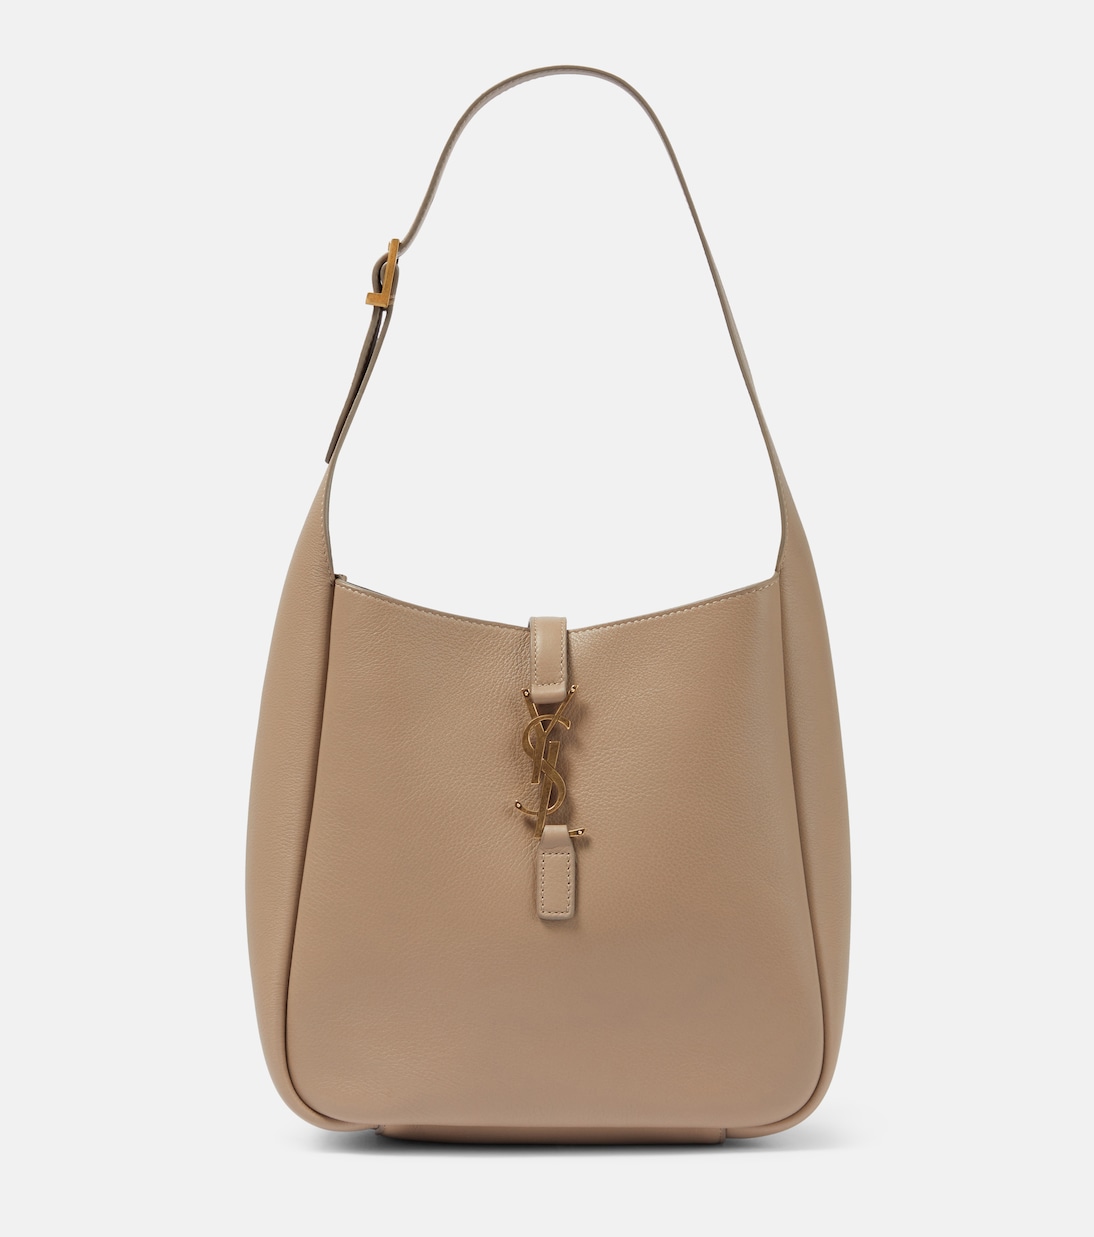 Shoulder bag small – Nice and Stylish Small Bag